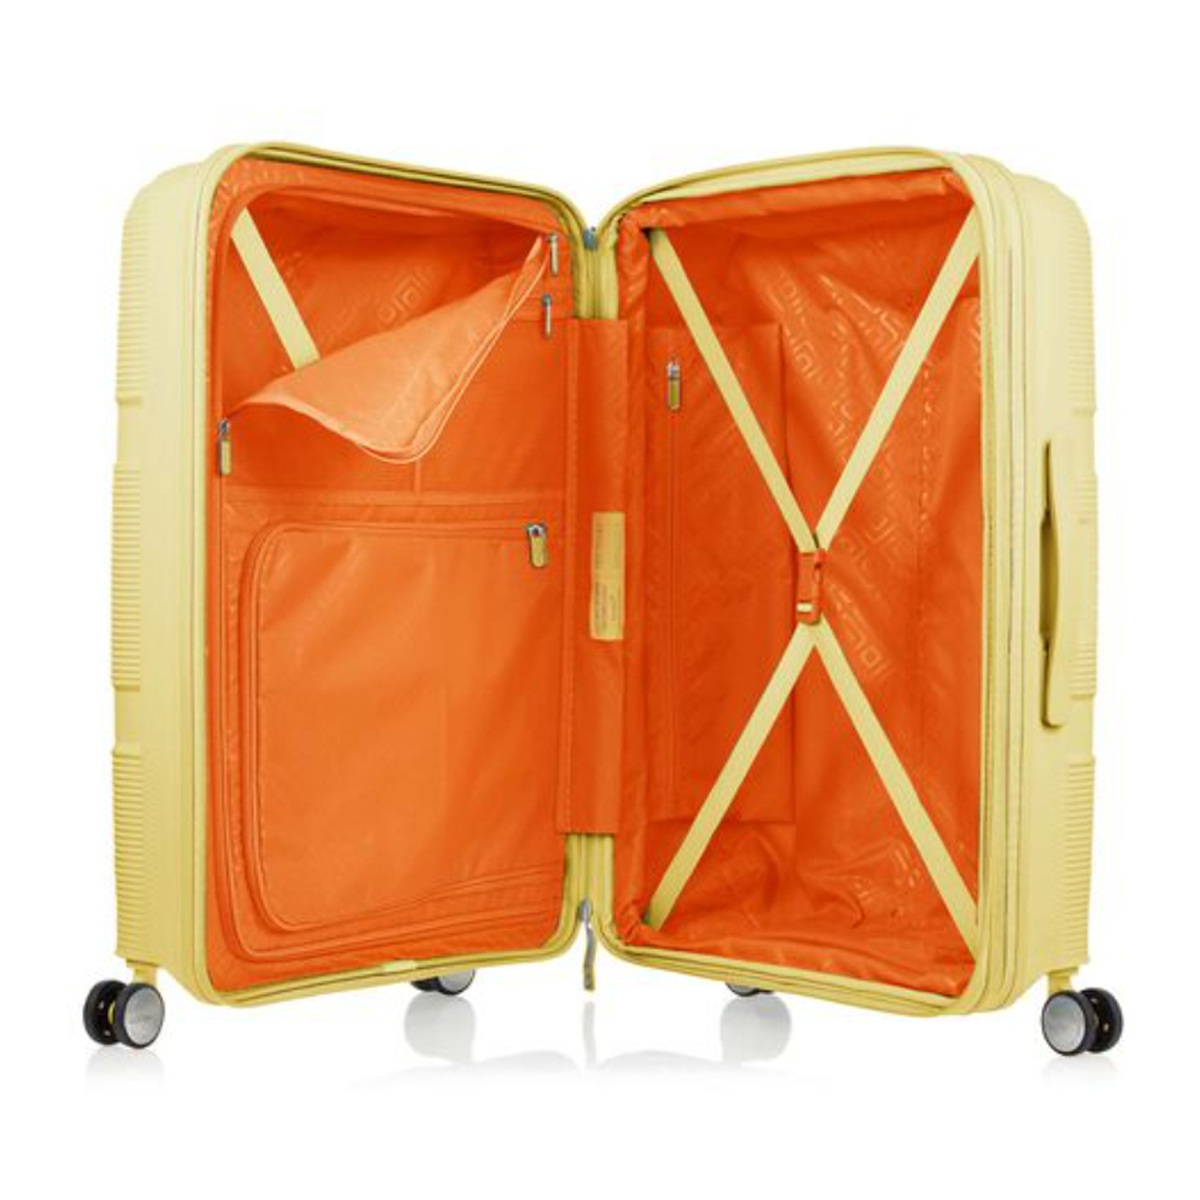 امريكان توريستر حقيبة سفر بعجلات صلبة إنستاجون سبينر مع موسع وقفل TSA، 81 سم، أصفر فاتح